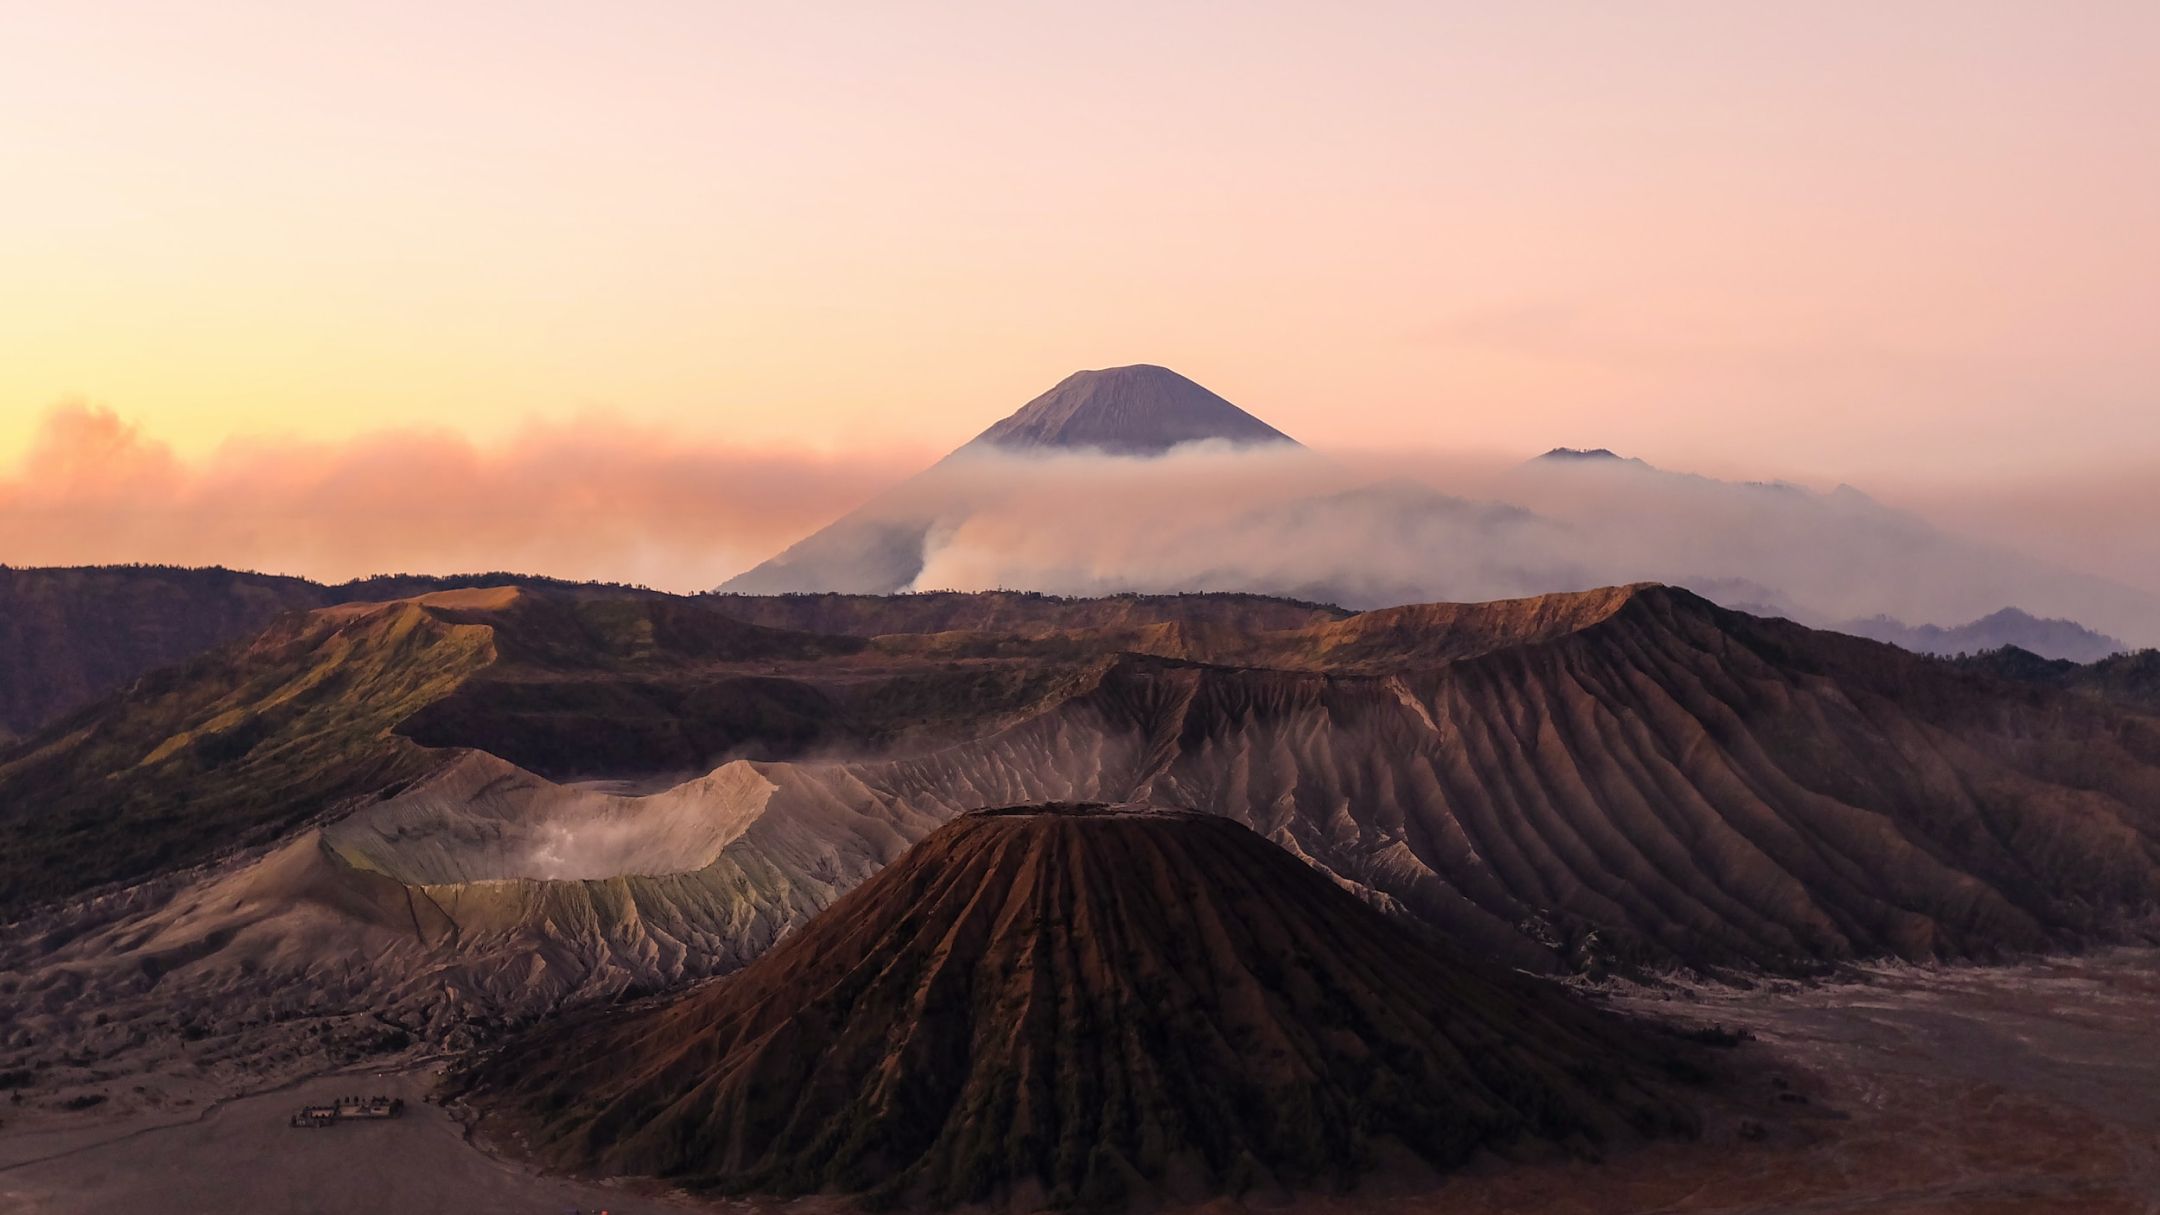 منظر بركاني في إندونيسيا، براكين صخرية محاطة بسحب ضبابية مواجهة للسماء وقت غروب الشمس.